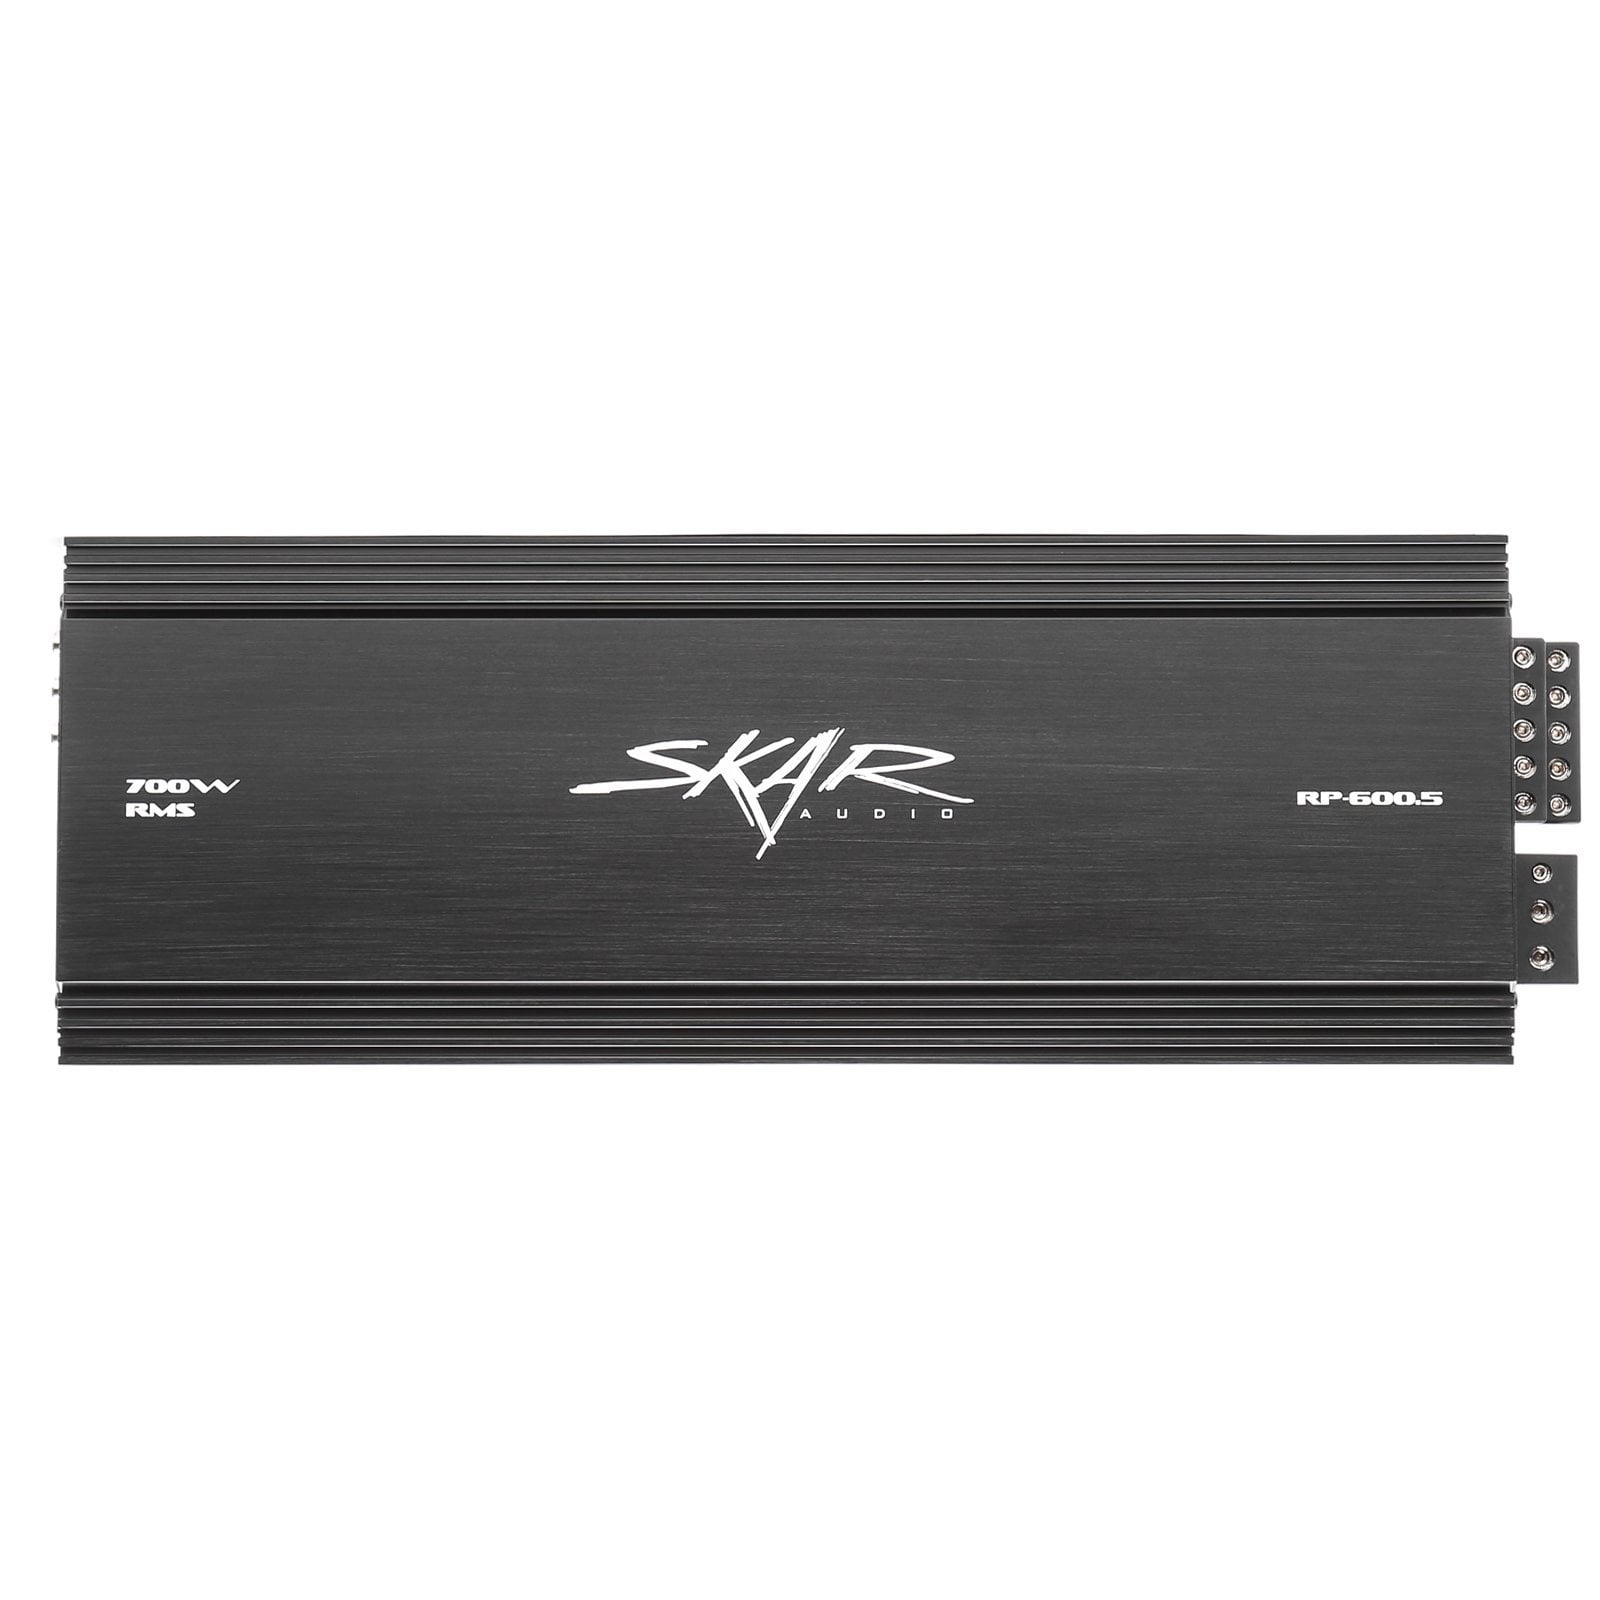 Skar Audio RP-600.5 700 Watt 5-Channel Car Amplifier - Front View